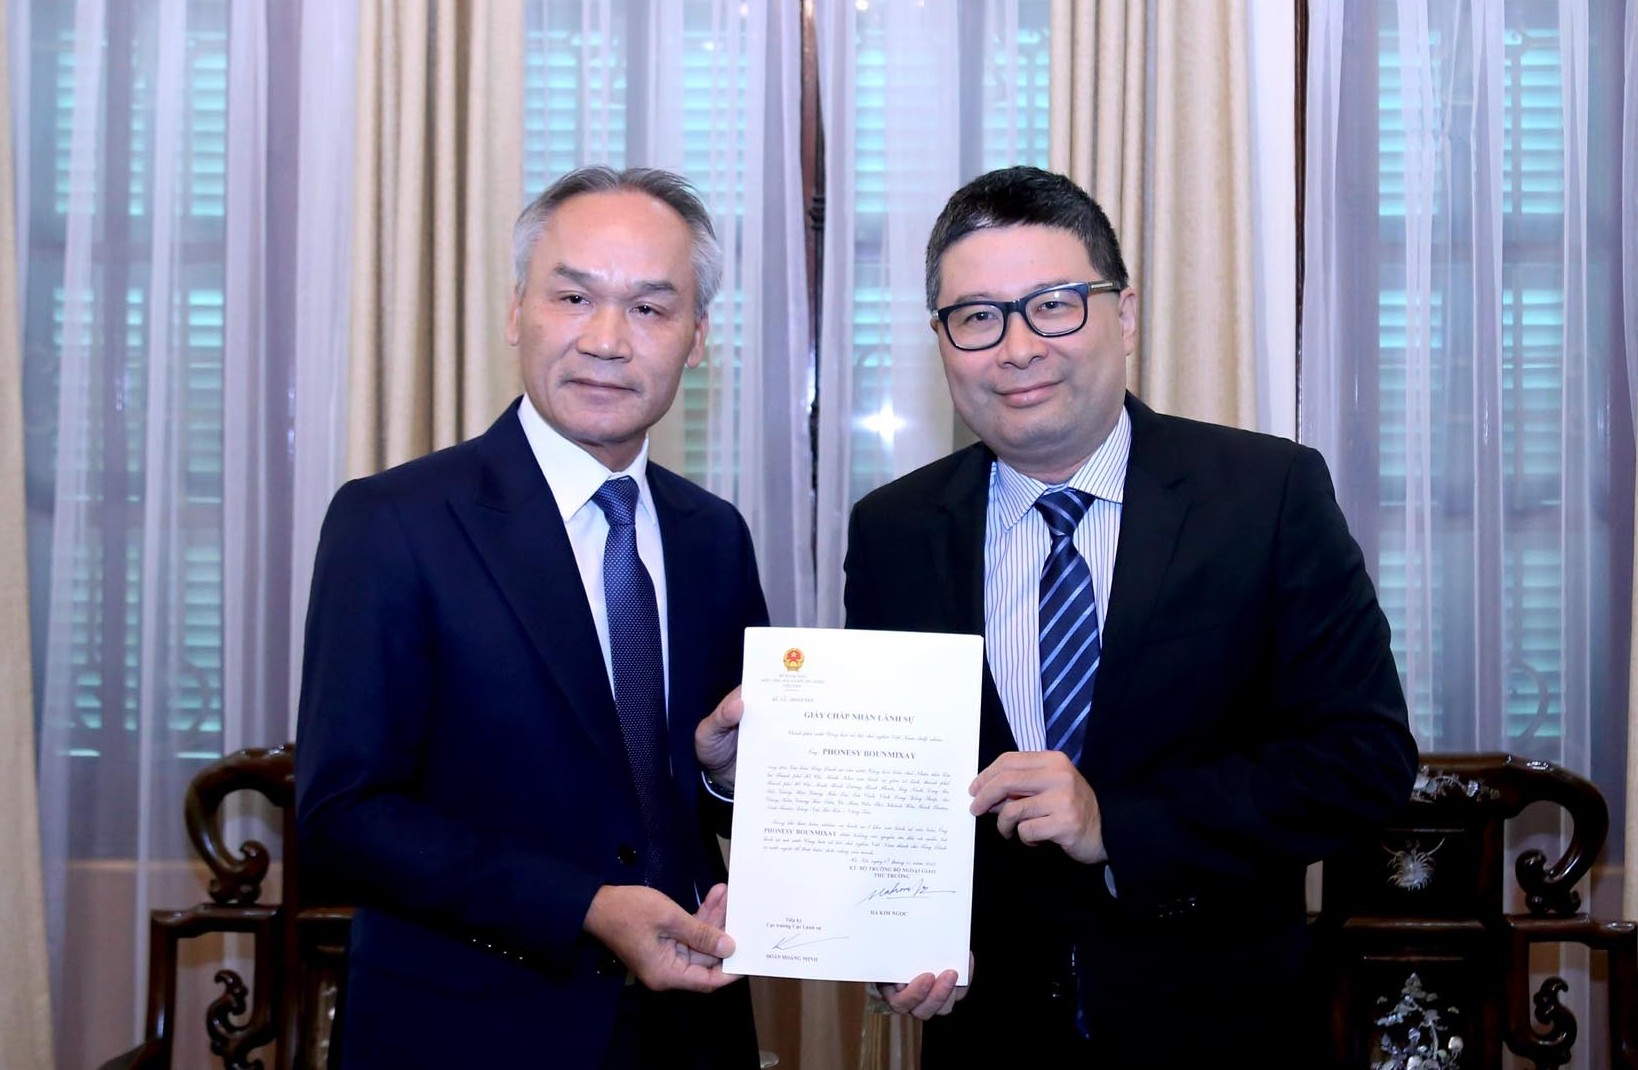 Bộ Ngoại giao trao Giấy Chấp nhận lãnh sự cho Tổng Lãnh sự mới của Lào tại TP. Hồ Chí Minh